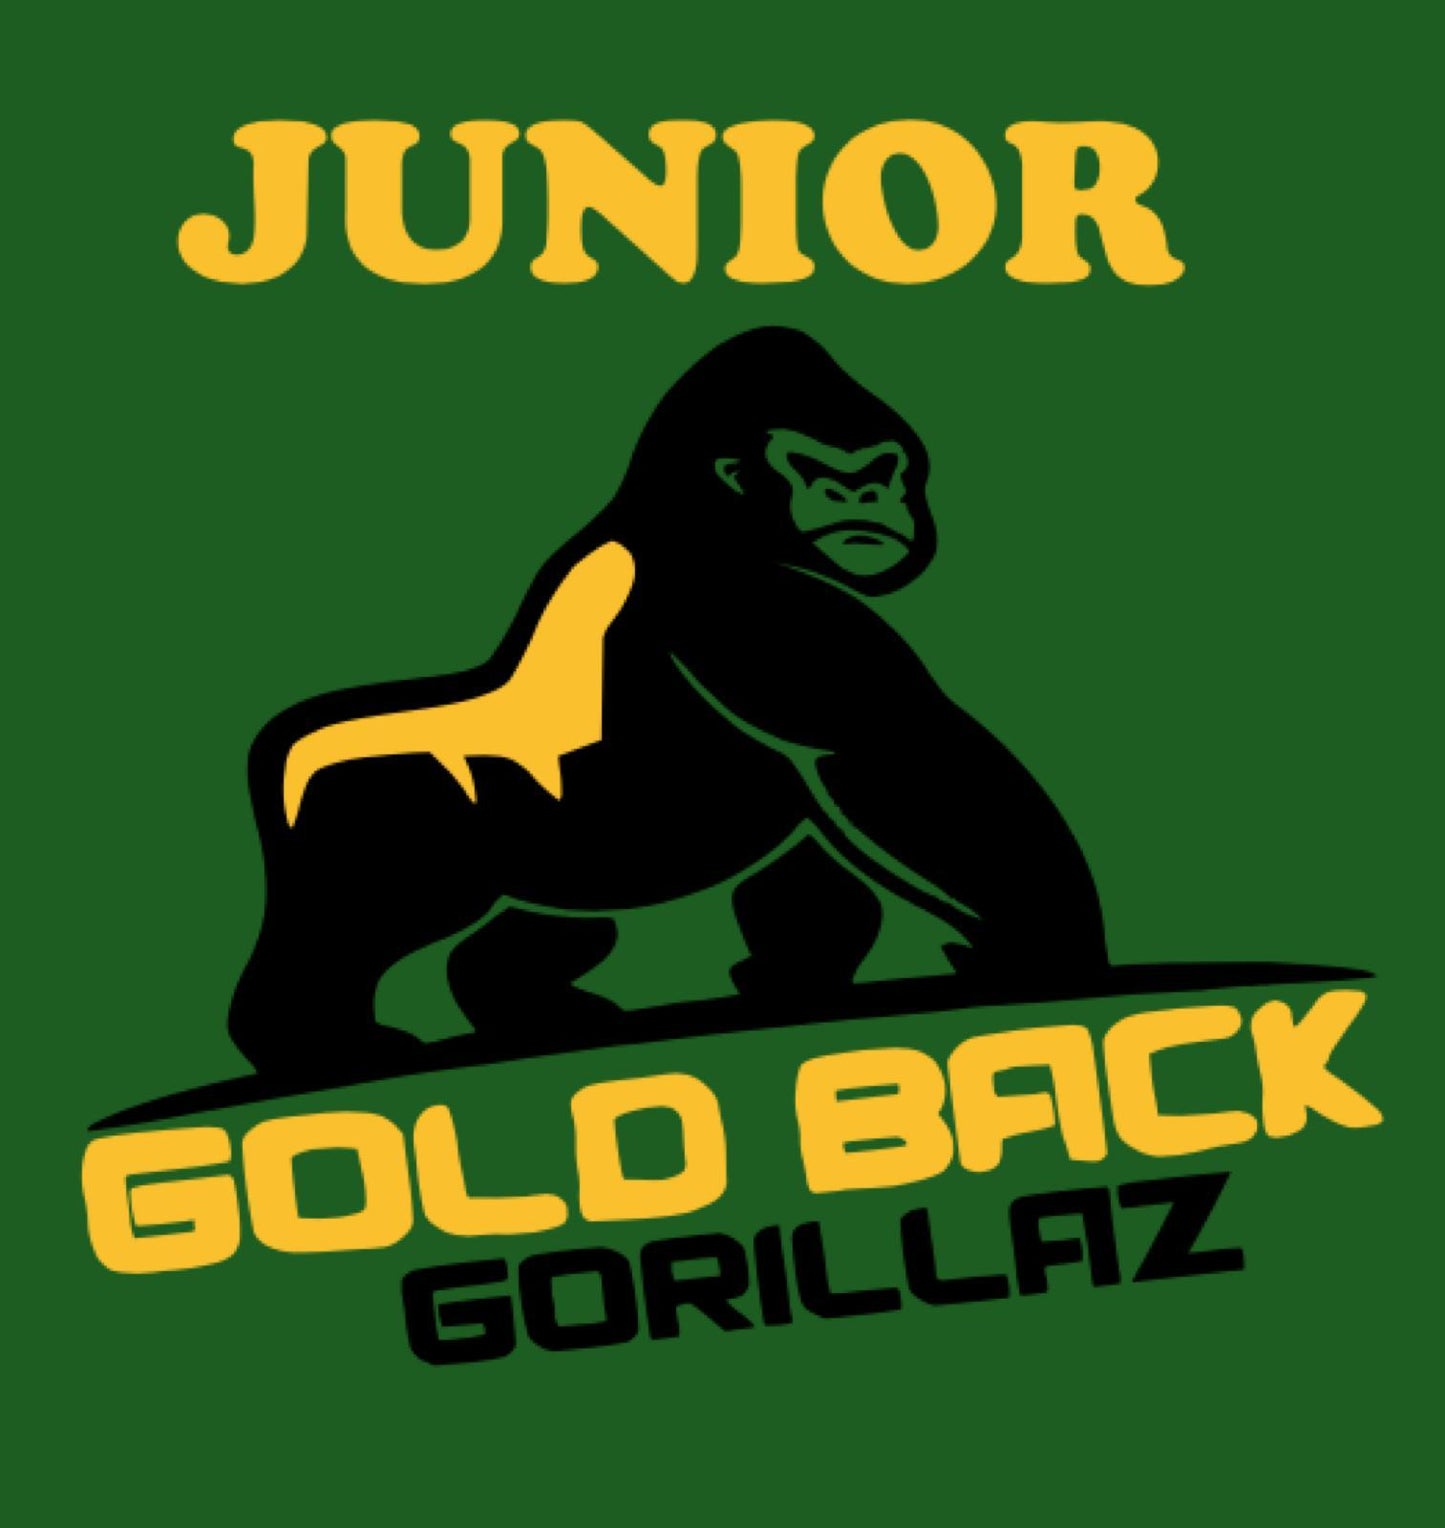 Junior Gold Back Gorillaz